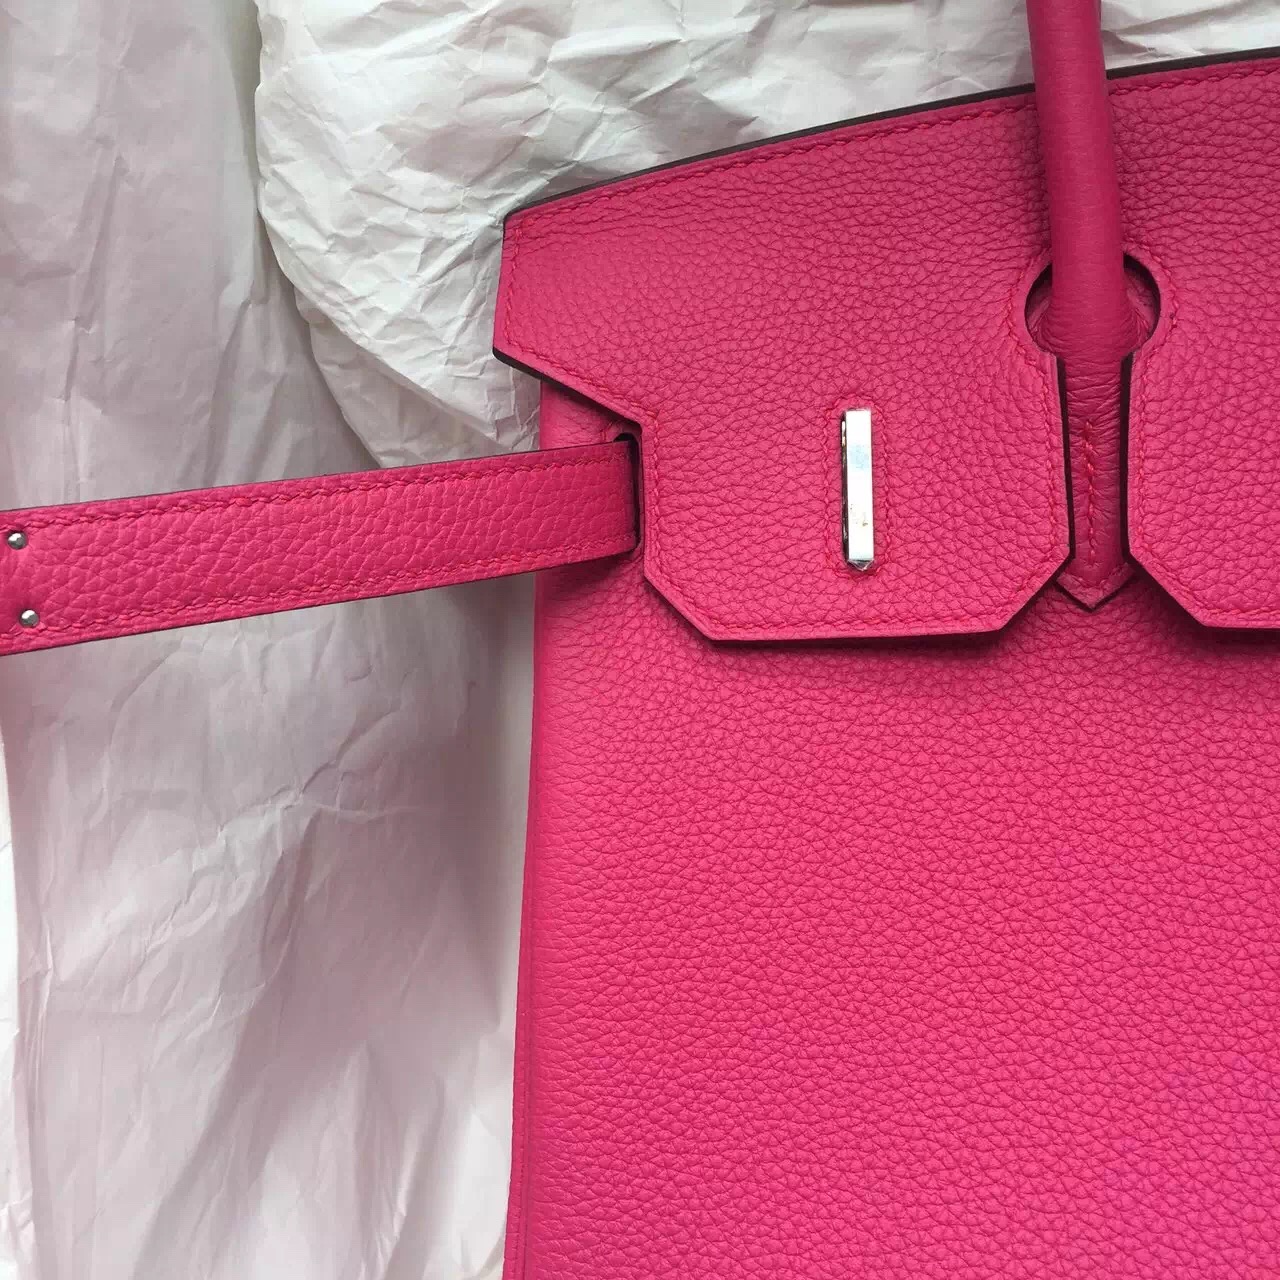 Wholesale Hermes 5R Hot Pink Togo Leather Birkin Bag 30CM Women&#8217;s Tote Bag